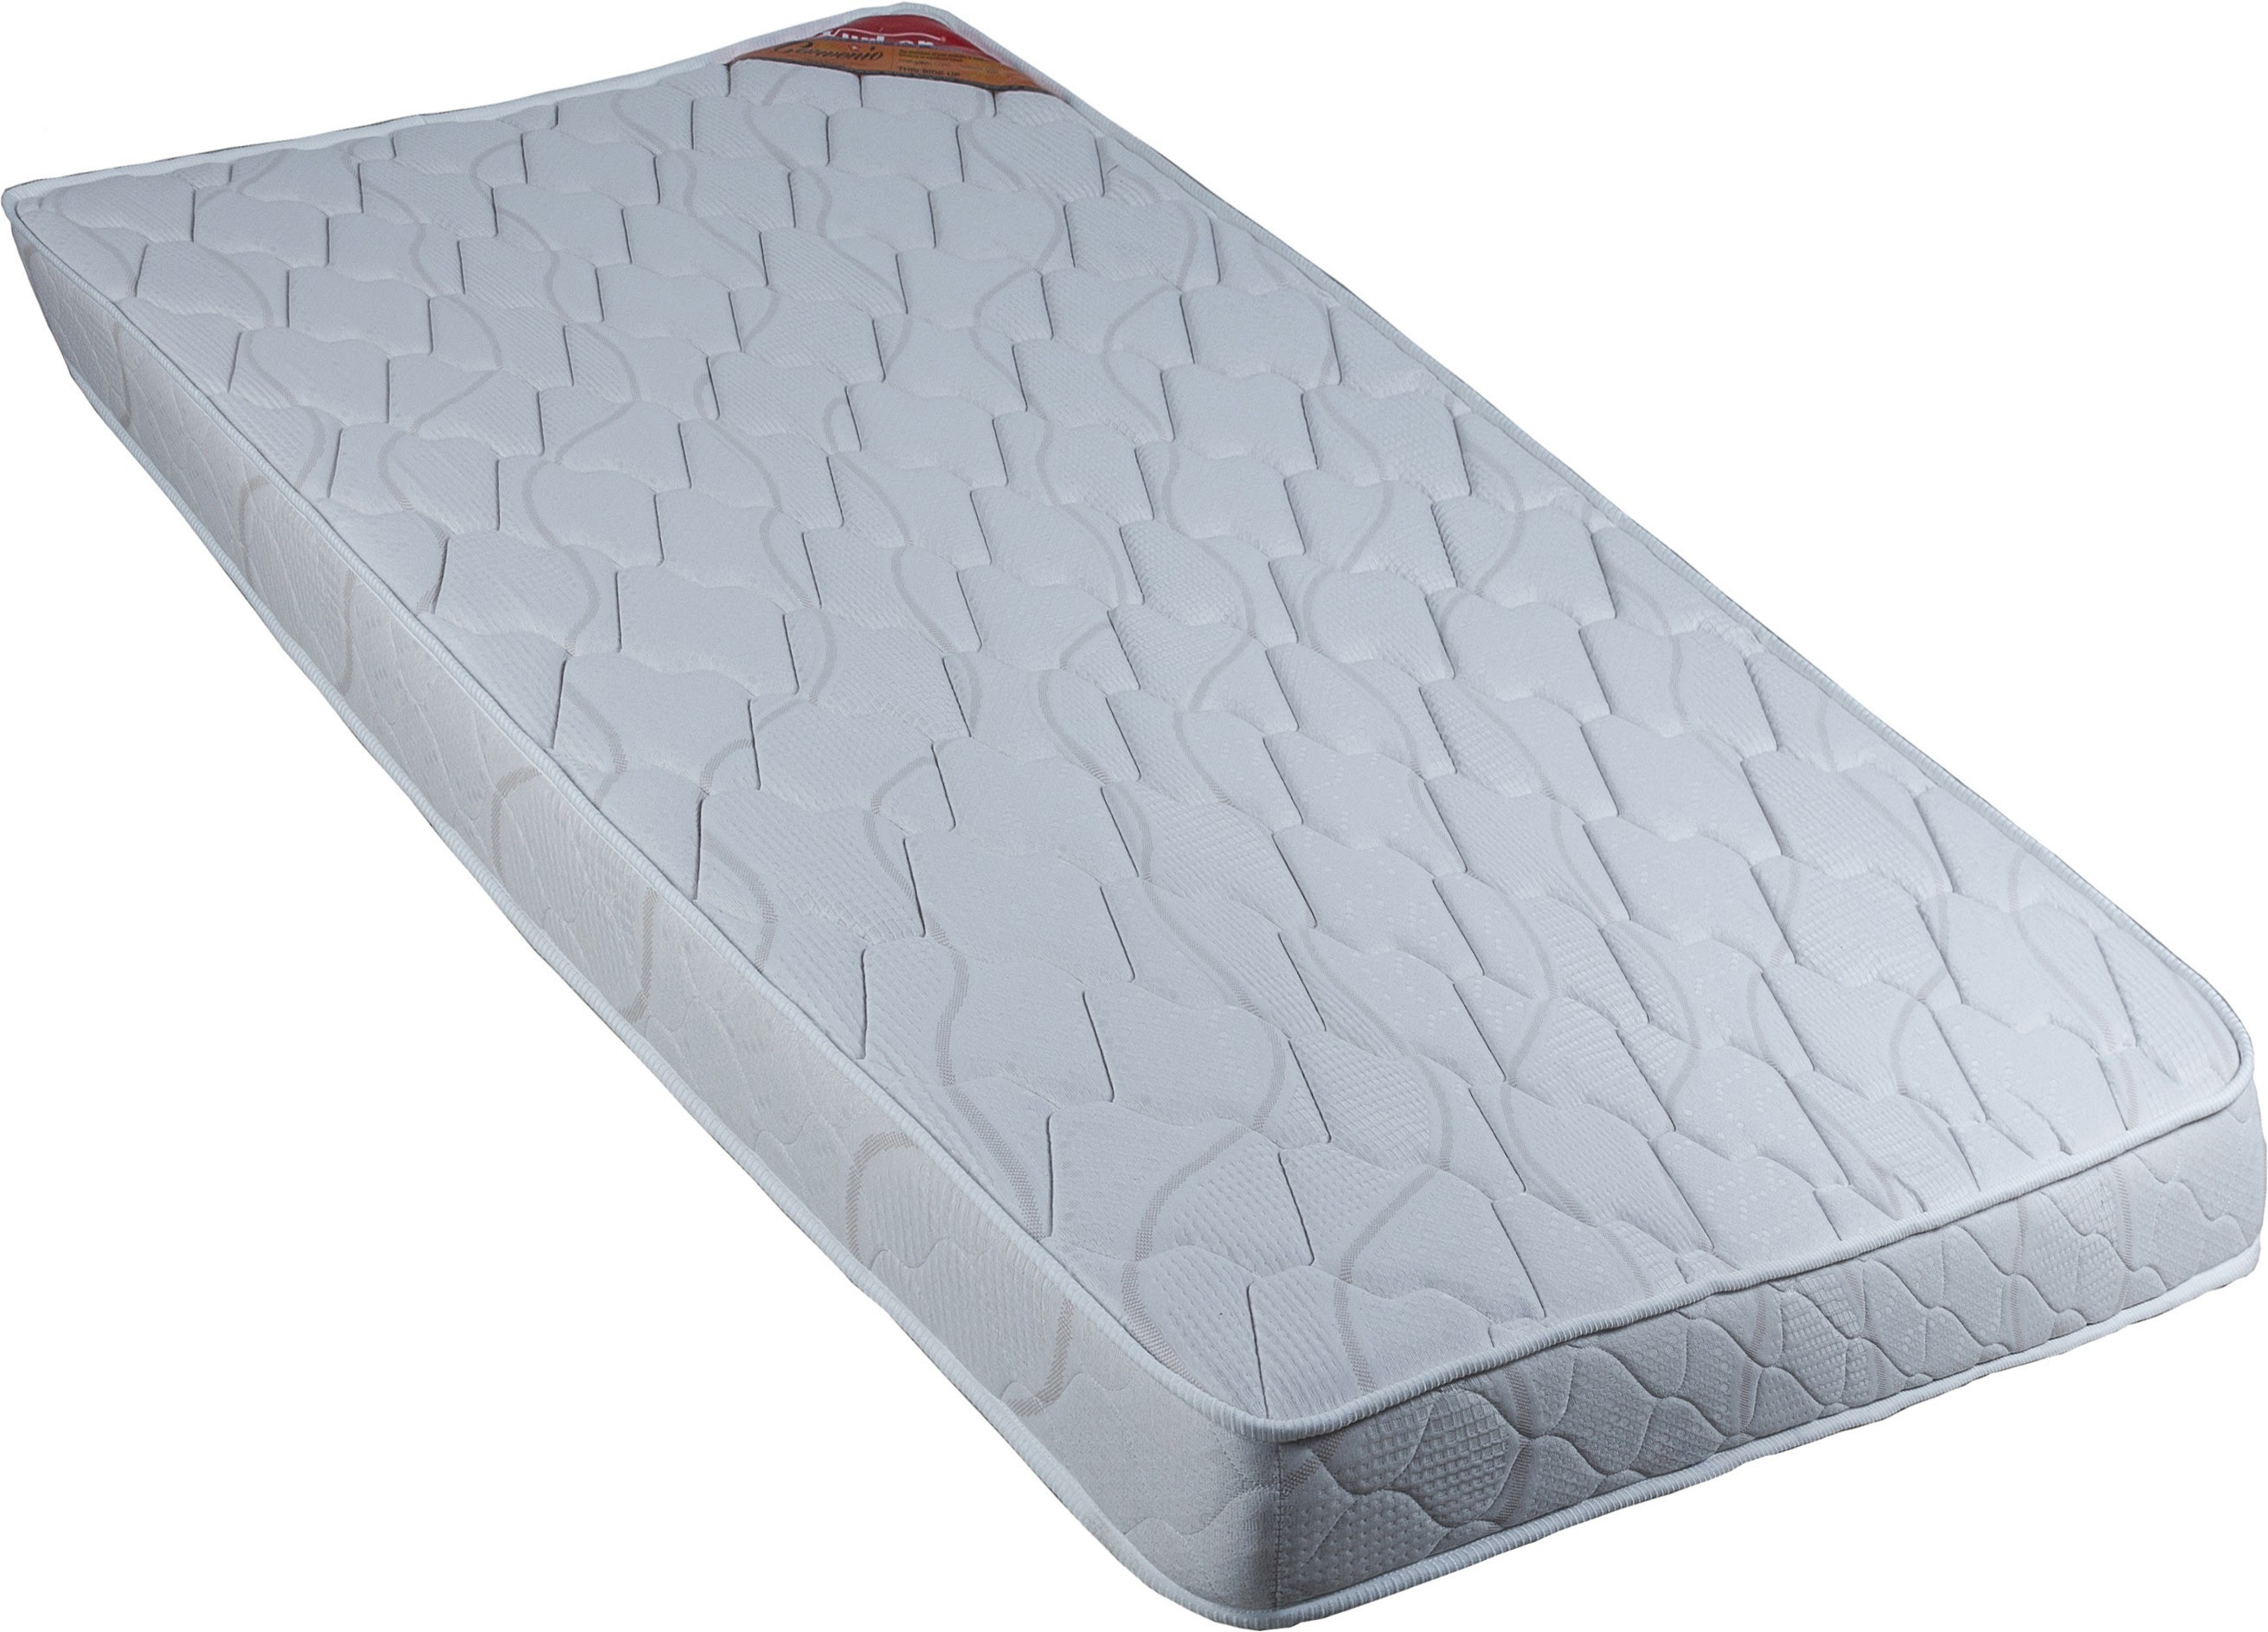 restolex single bed mattress